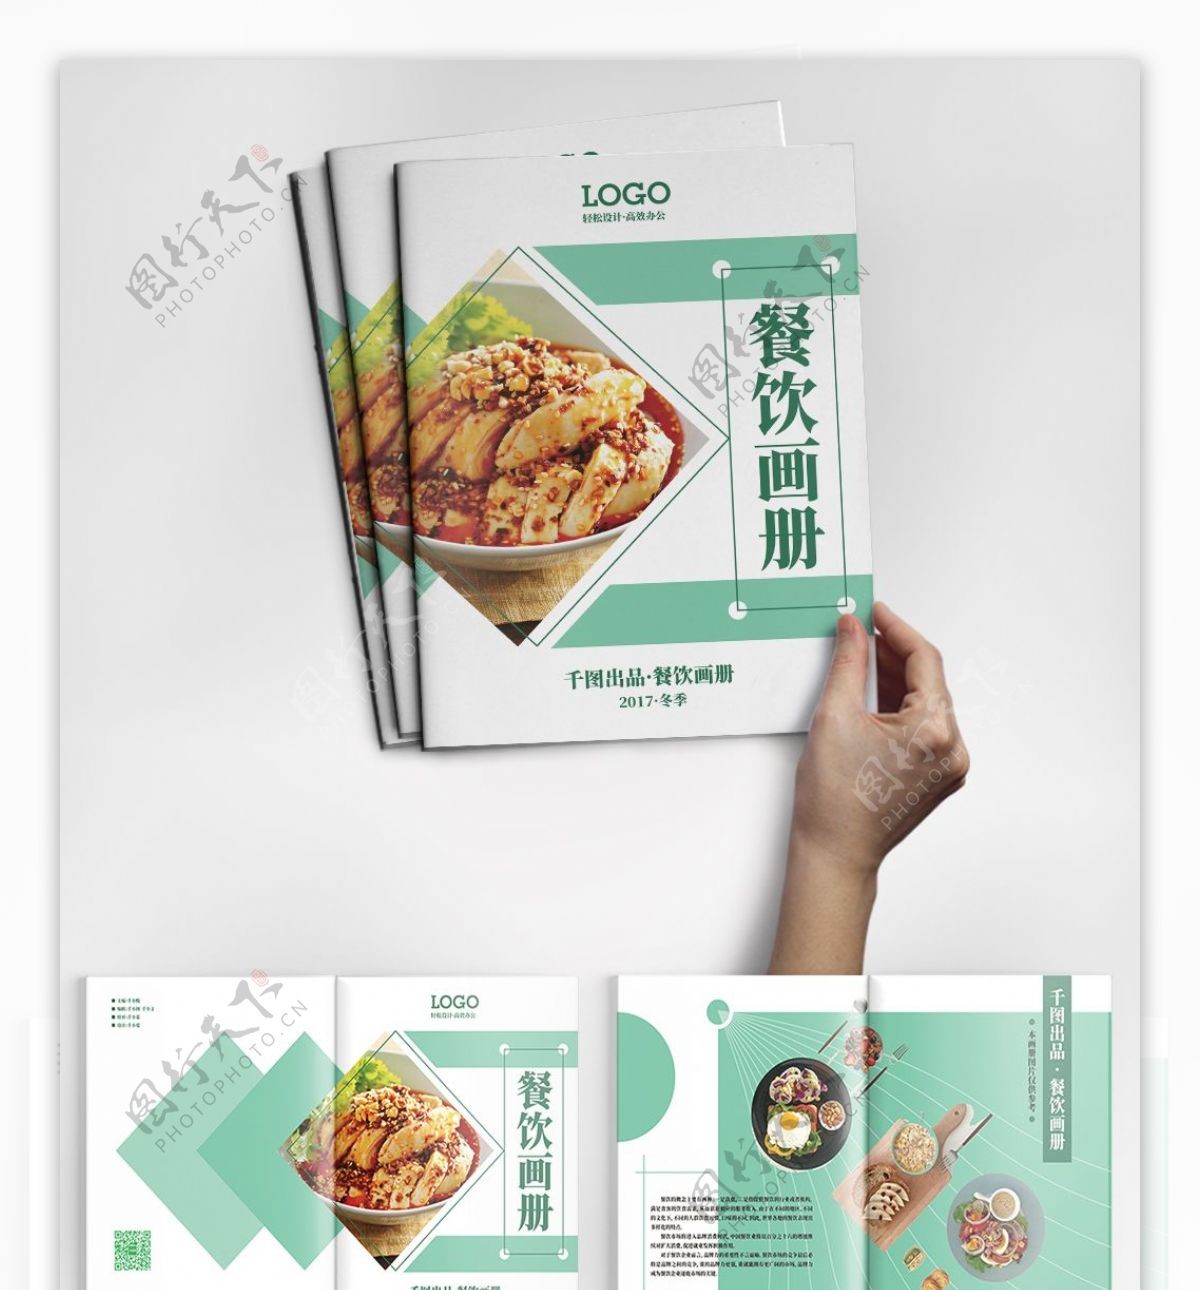 简约时尚青色餐饮美食画册设计ai模板